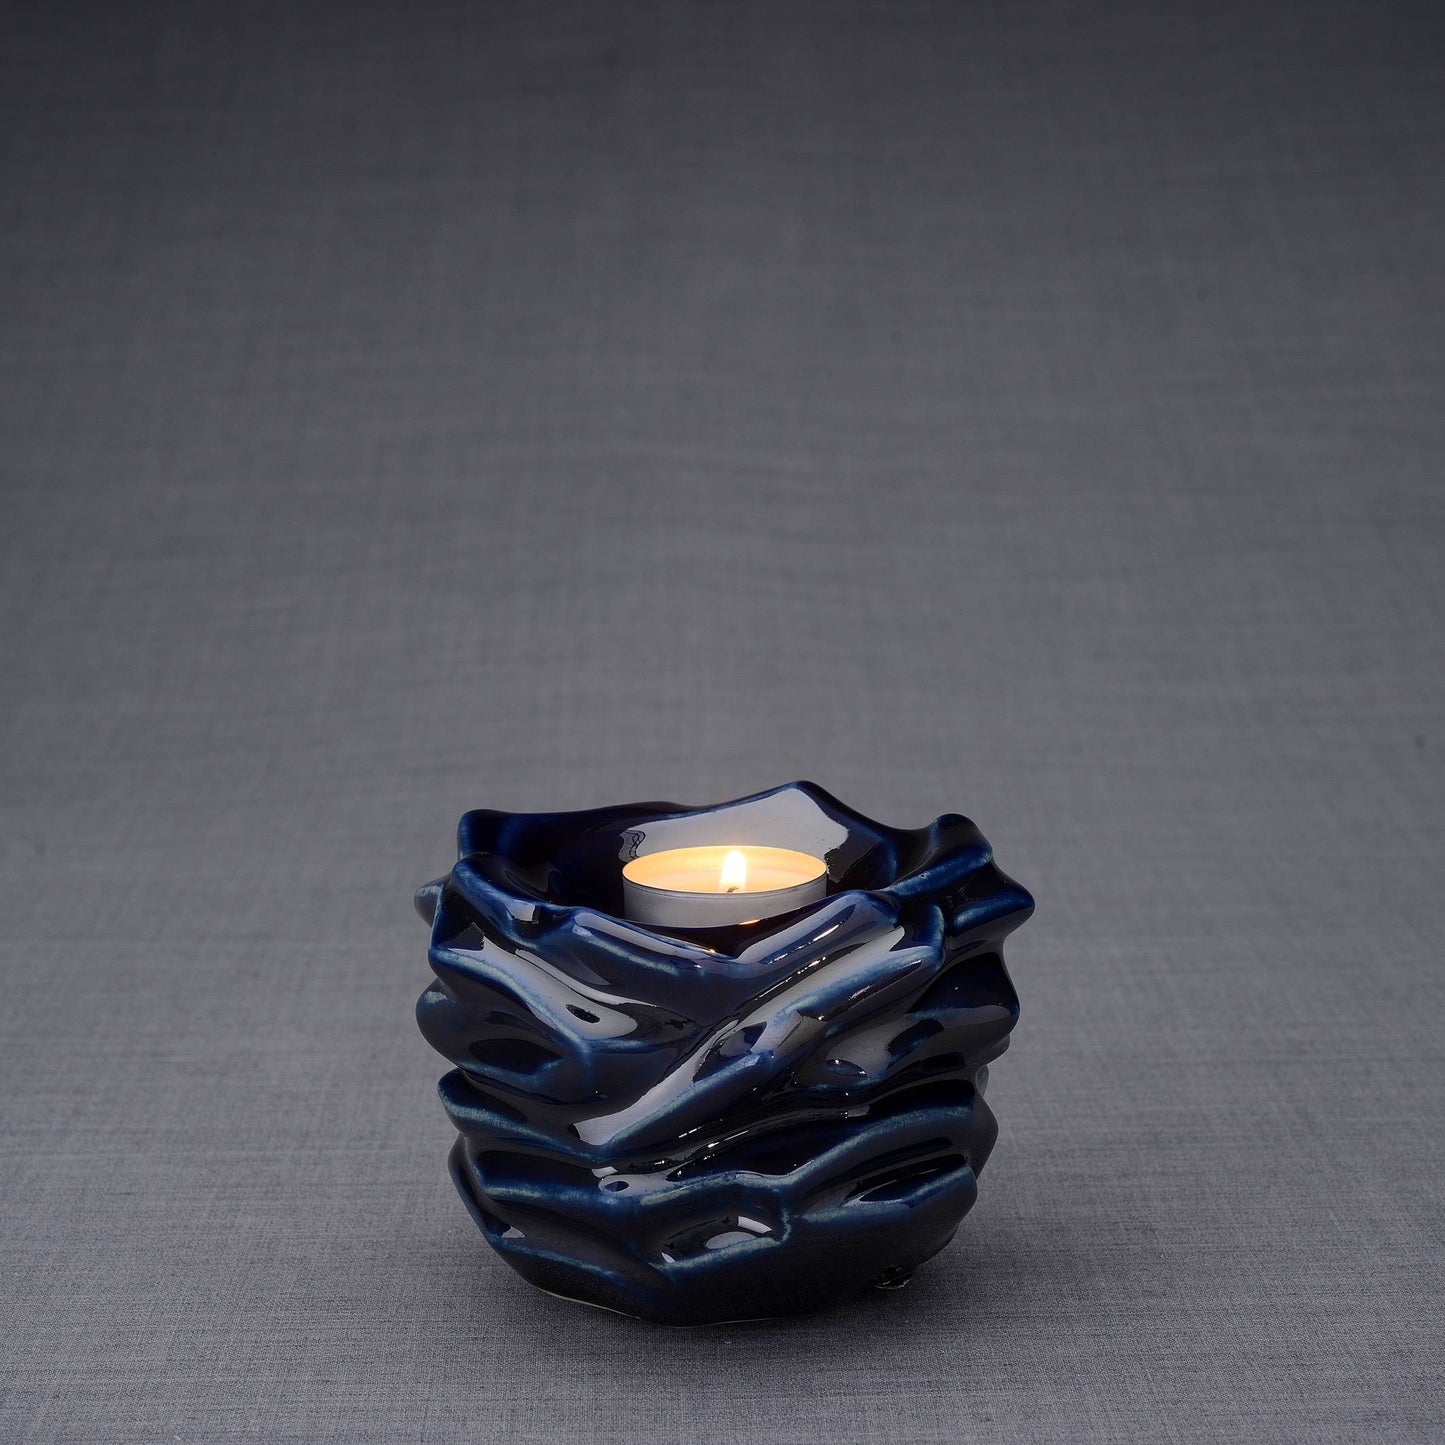 The Christ Handmade Keepsake Cremation Urn for Ashes, color Cobalt Metallic, Candle-holder-PulvisArtUrns-Pulvis Art Urns